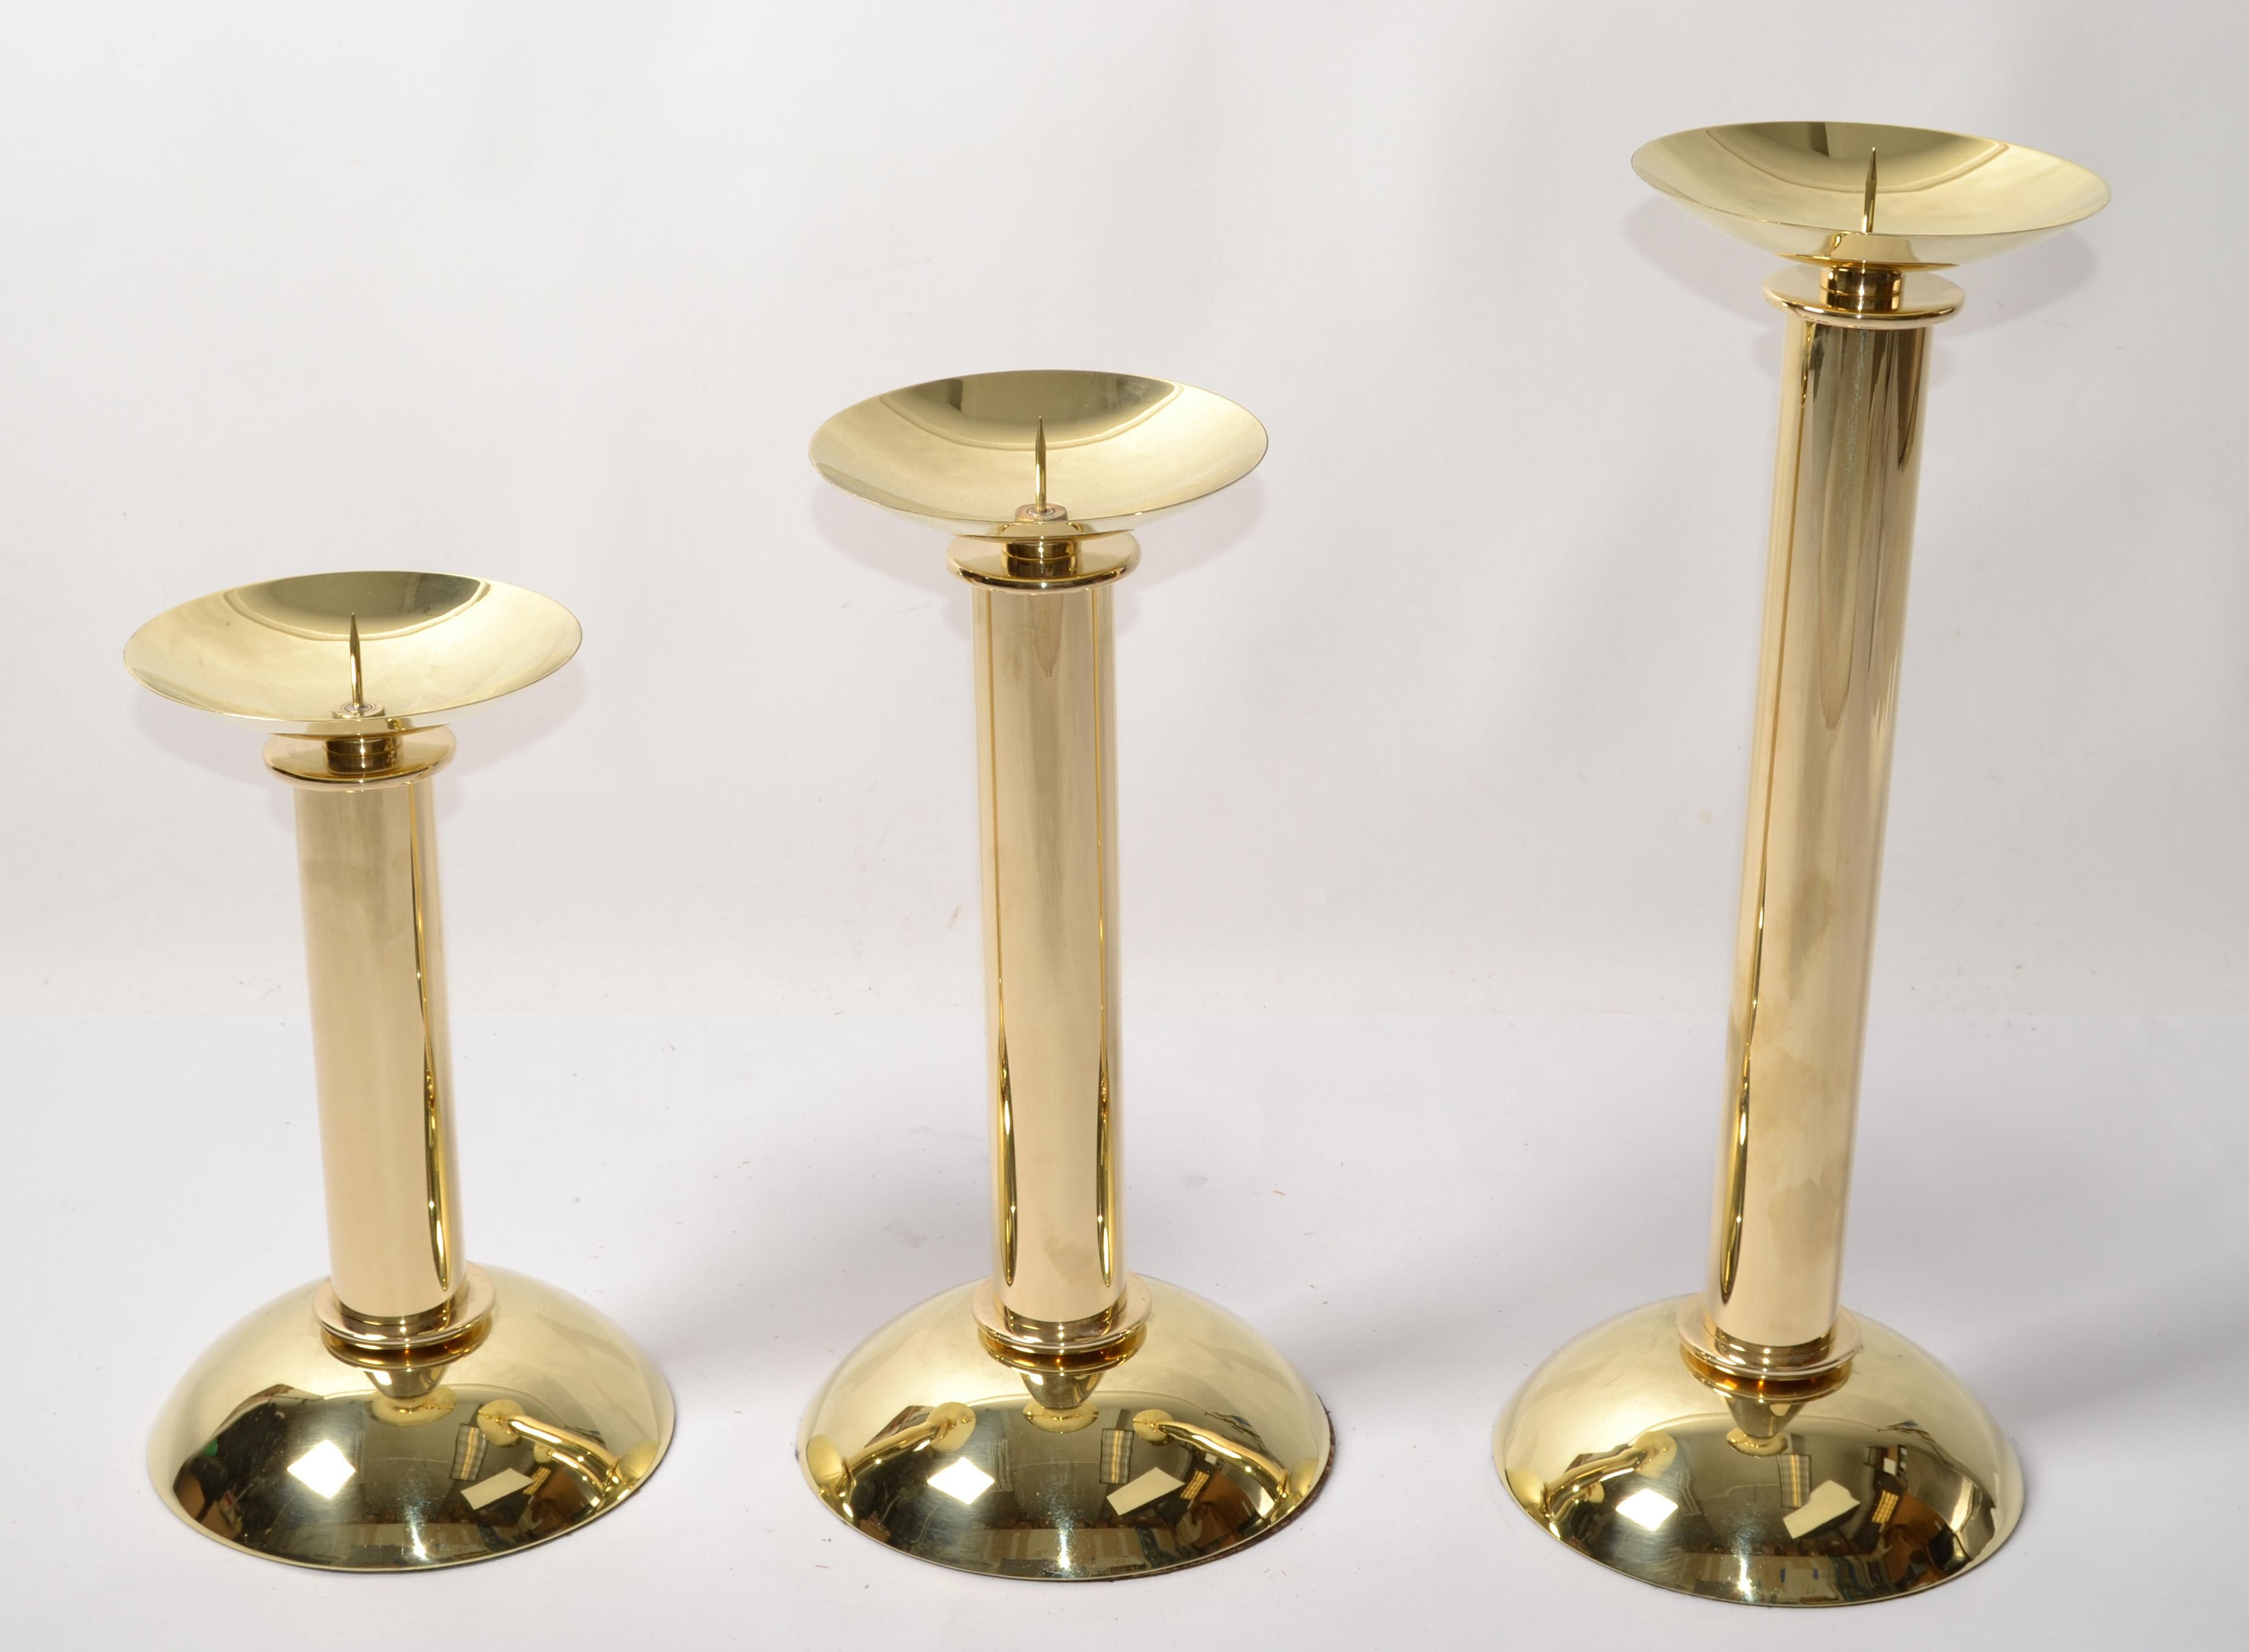 Ces 3 chandeliers gradués en laiton poli Karl Springer LTD ont été conçus par Karl Springer vers 1985 en Amérique.
Chacune présente une base concave et un sommet convexe reliés par un corps cylindrique, le tout en laiton lustré à la base et au